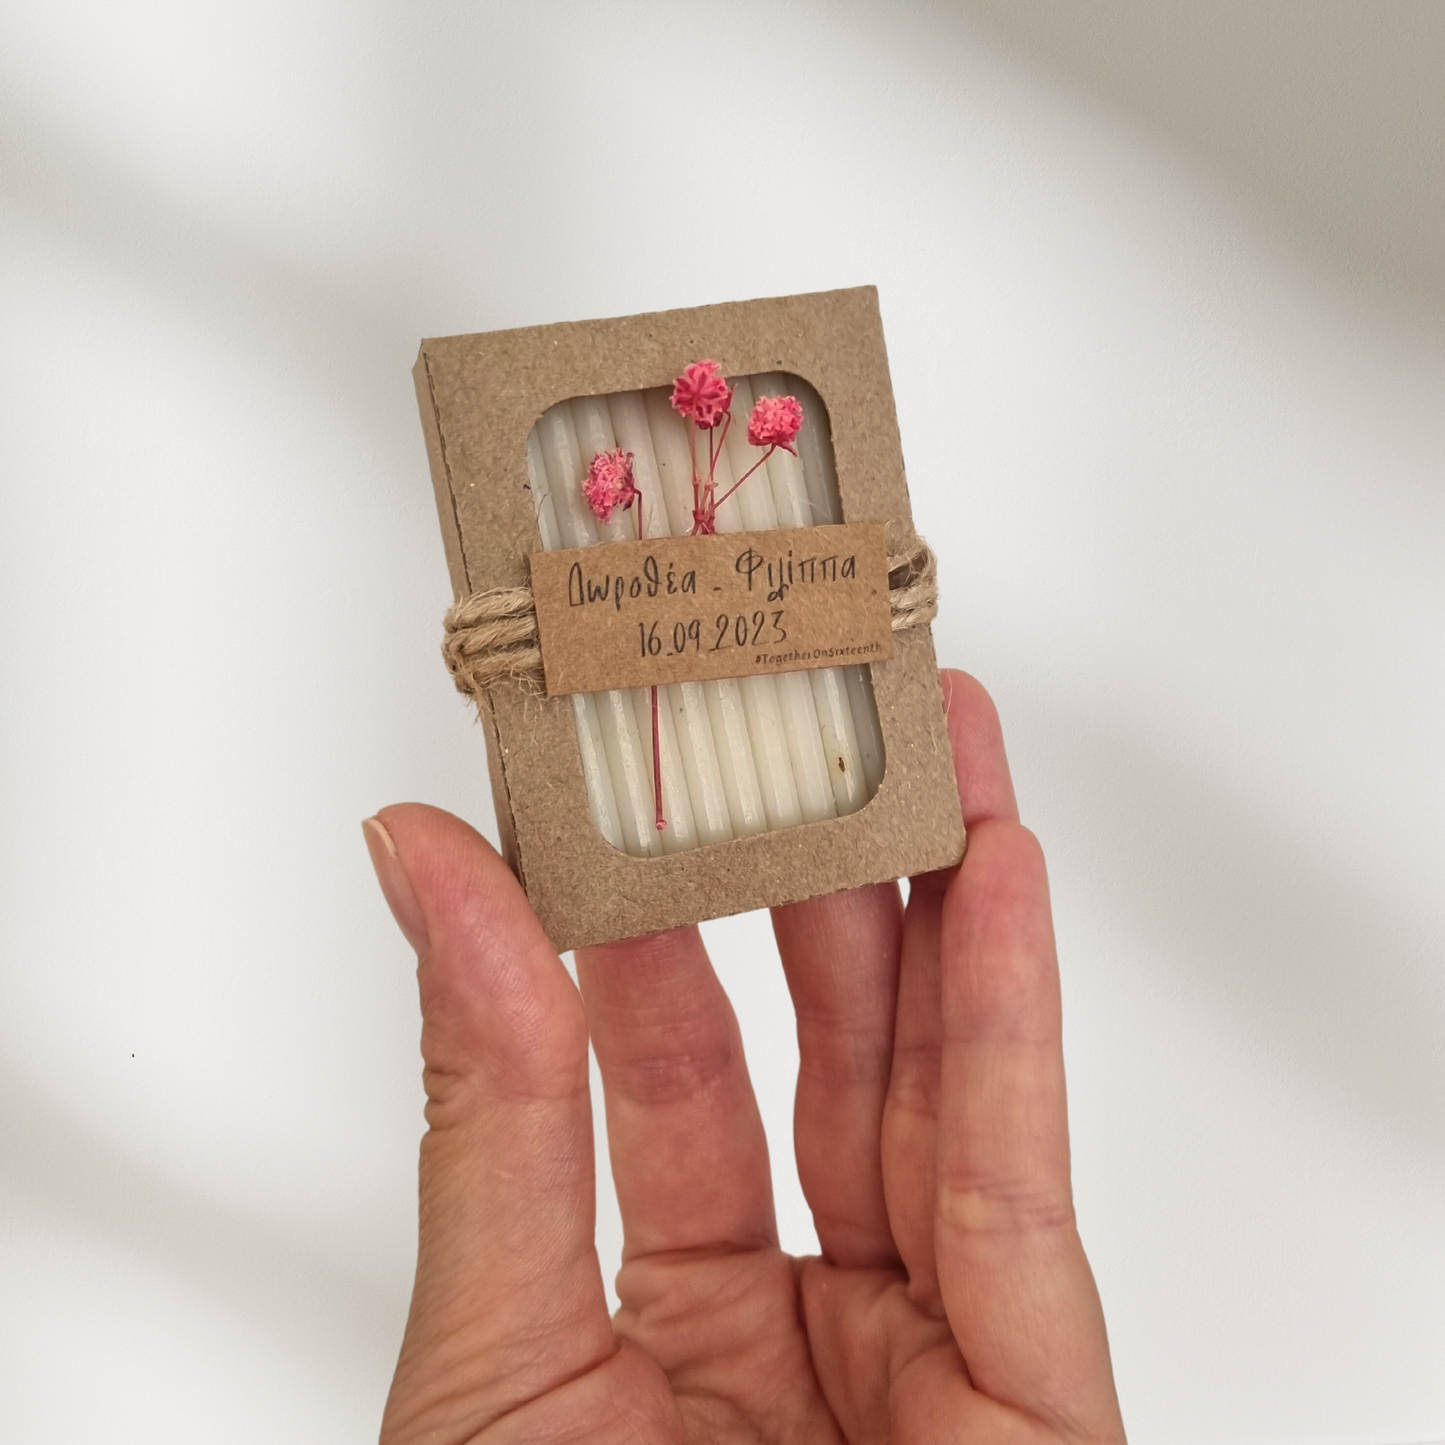 Μπομπονιέρα χειροποίητο σαπούνι σε craft κουτί με αποξηραμένα λουλούδια